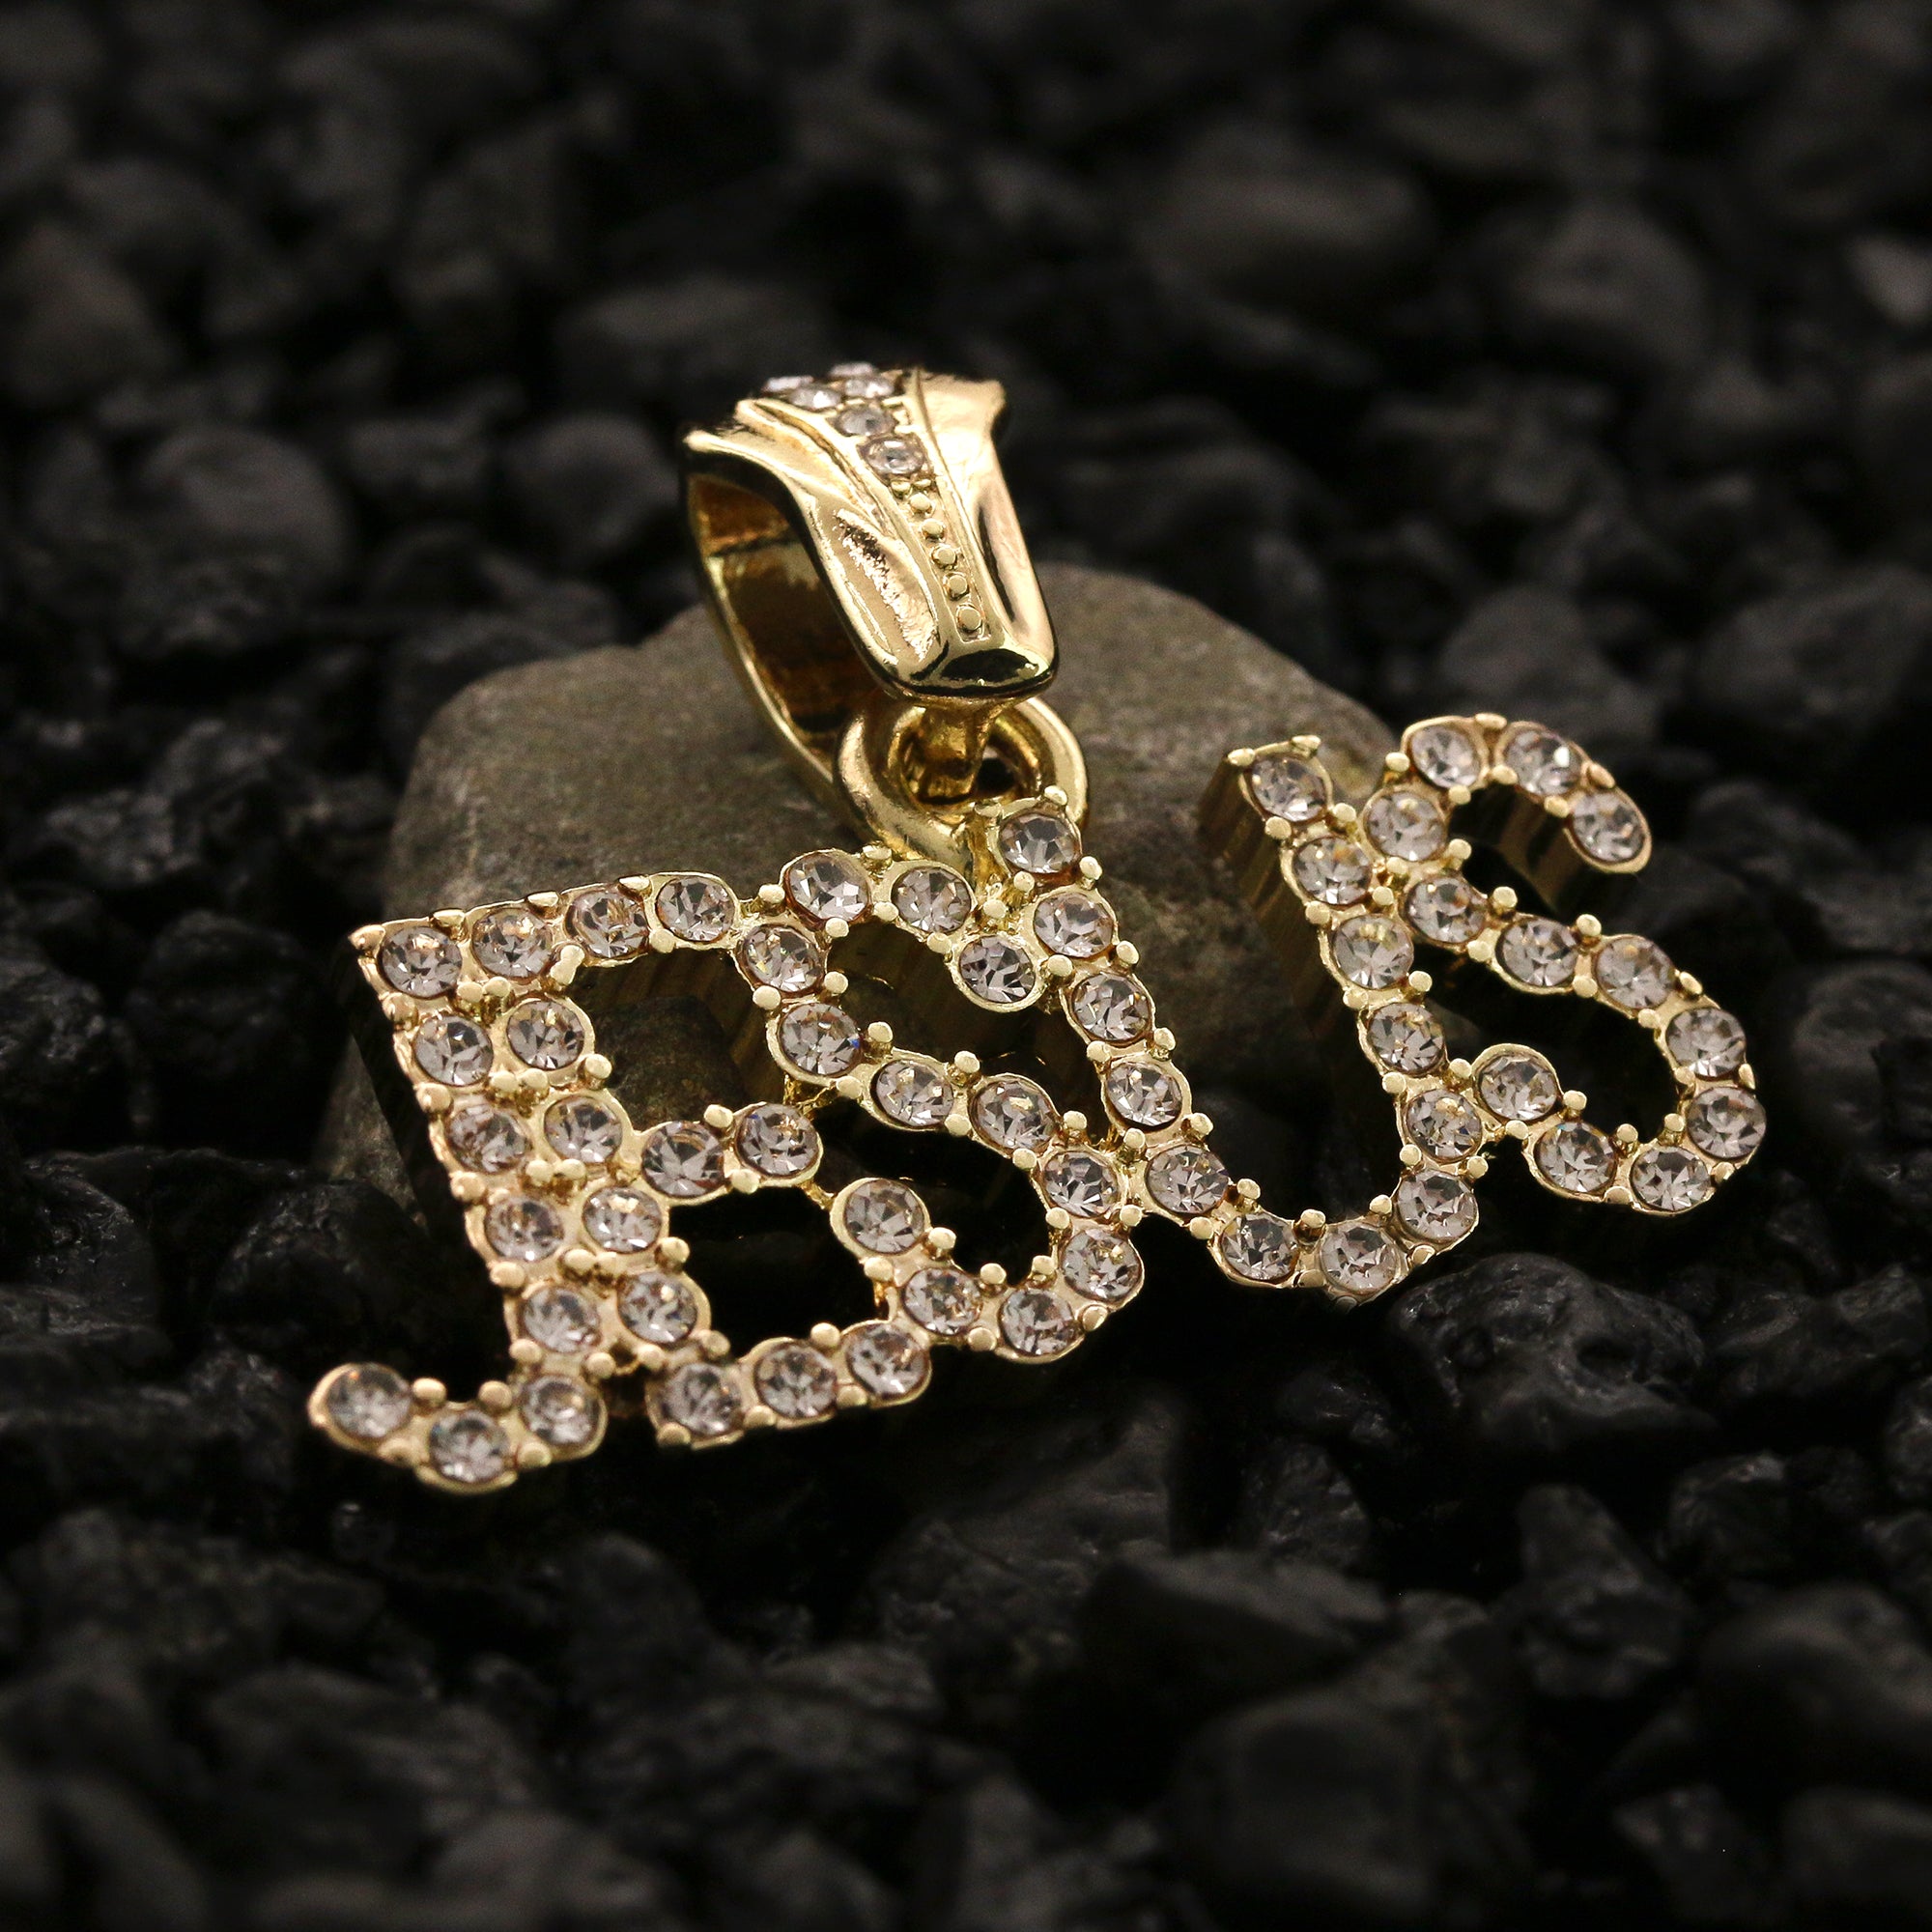 Cz Jesus Pendant Rope Chain Men's Hip Hop 18k Cz Jewelry Necklace Choker